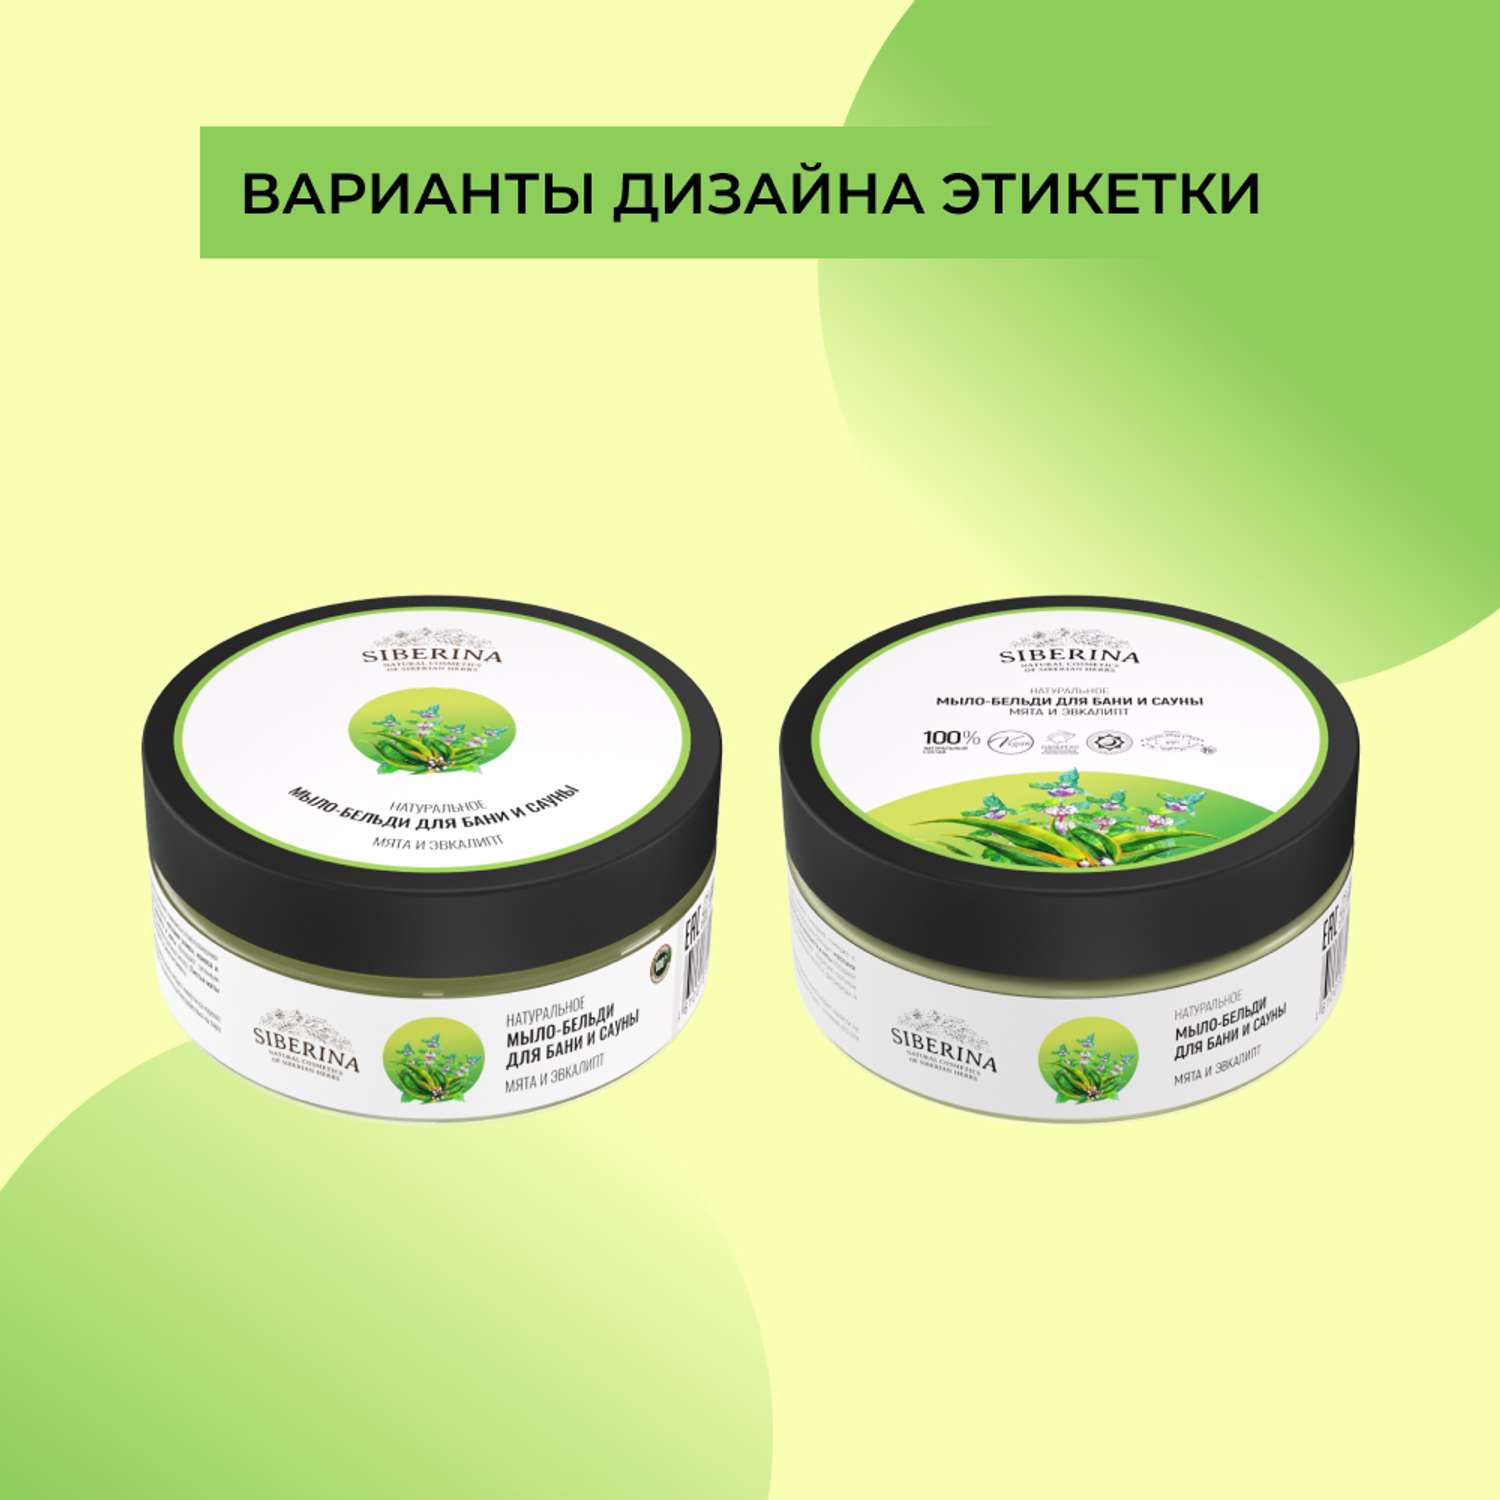 Мыло-бельди Siberina натуральное «Мята и эвкалипт» для бани и сауны 170 г - фото 8